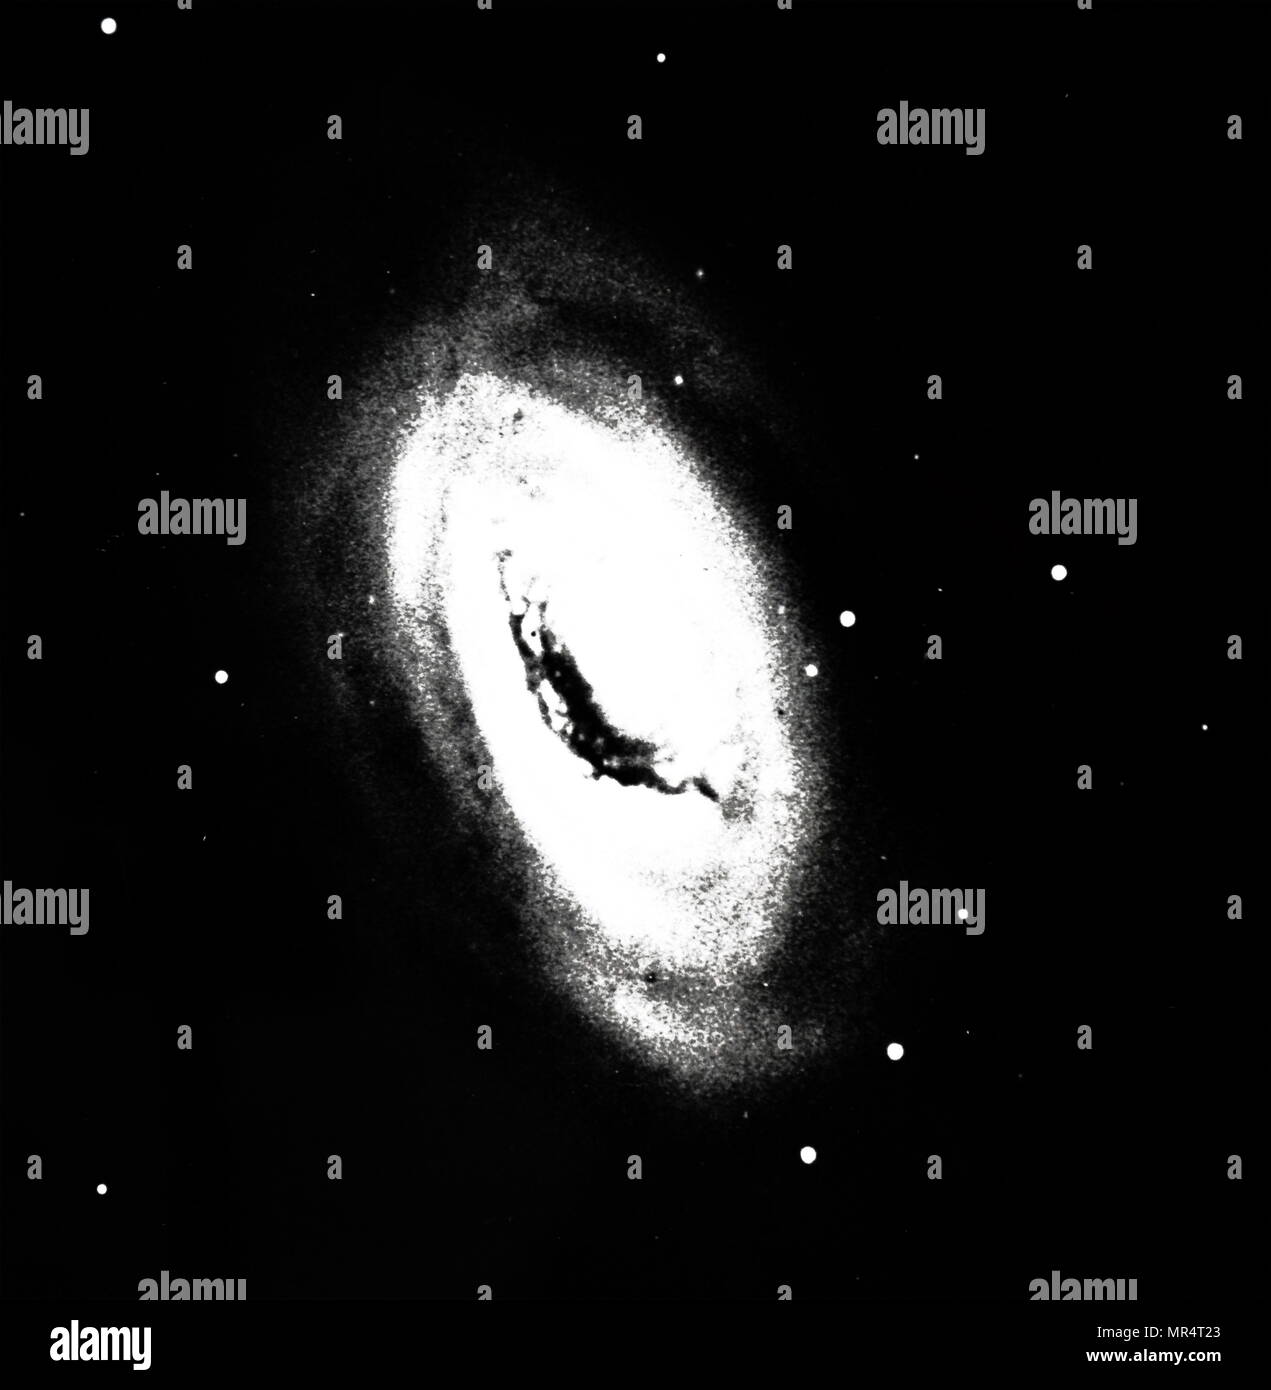 Fotografía de la galaxia espiral (M 64) en la constelación de Coma Berenices, mostrando oscureciendo asunto en regiones centrales. Fecha siglo xx Foto de stock